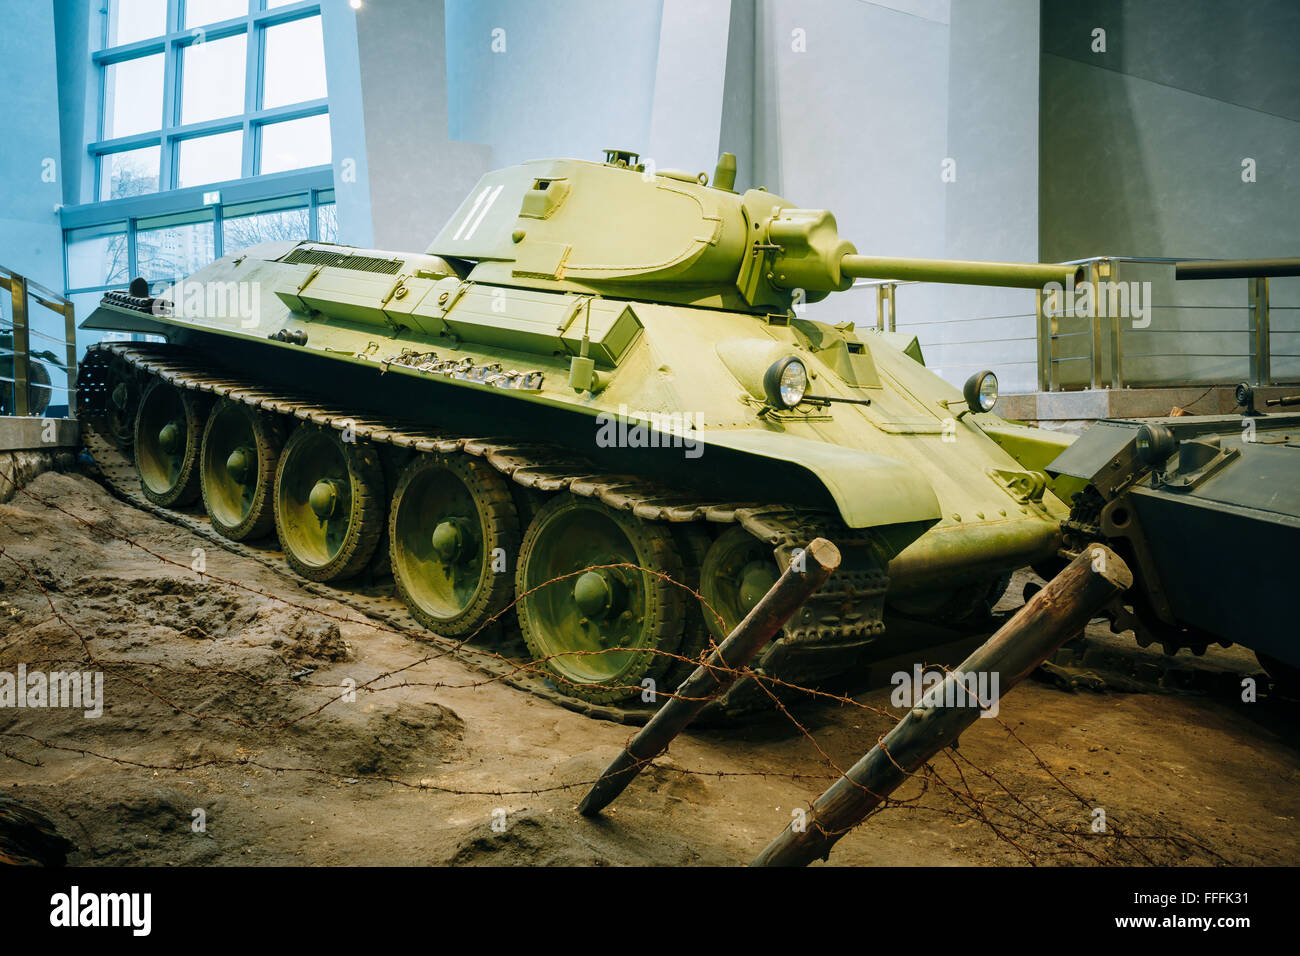 Minsk, Belarus - December 20, 2015: Soviet russian medium tank T-34 in Belarusian Museum Of Great Patriotic War in Minsk, Belaru Stock Photo